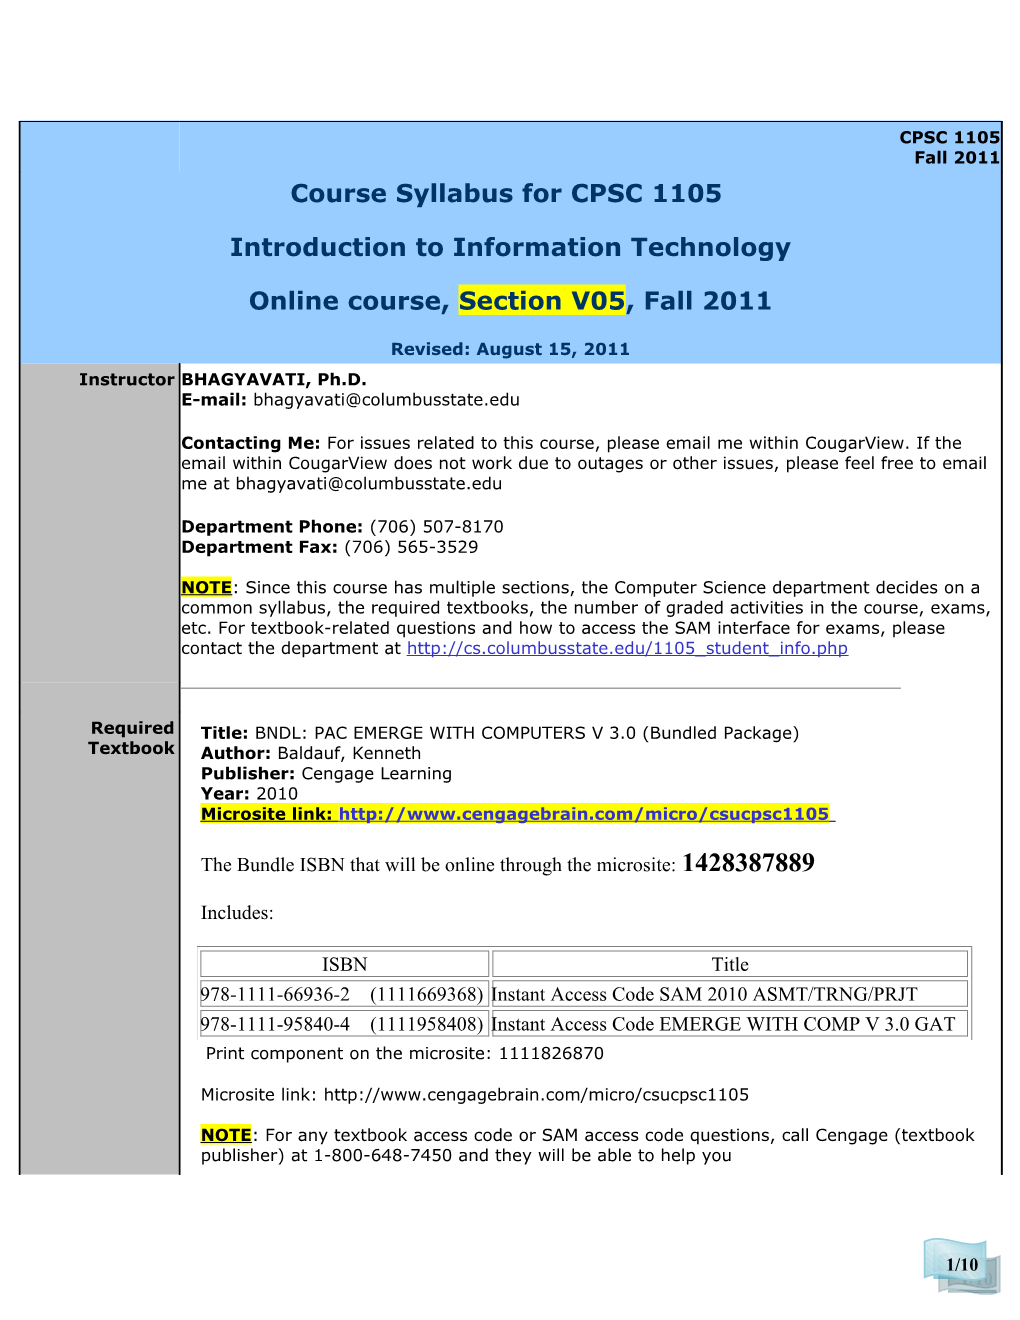 Course Syllabus for CPSC 1105